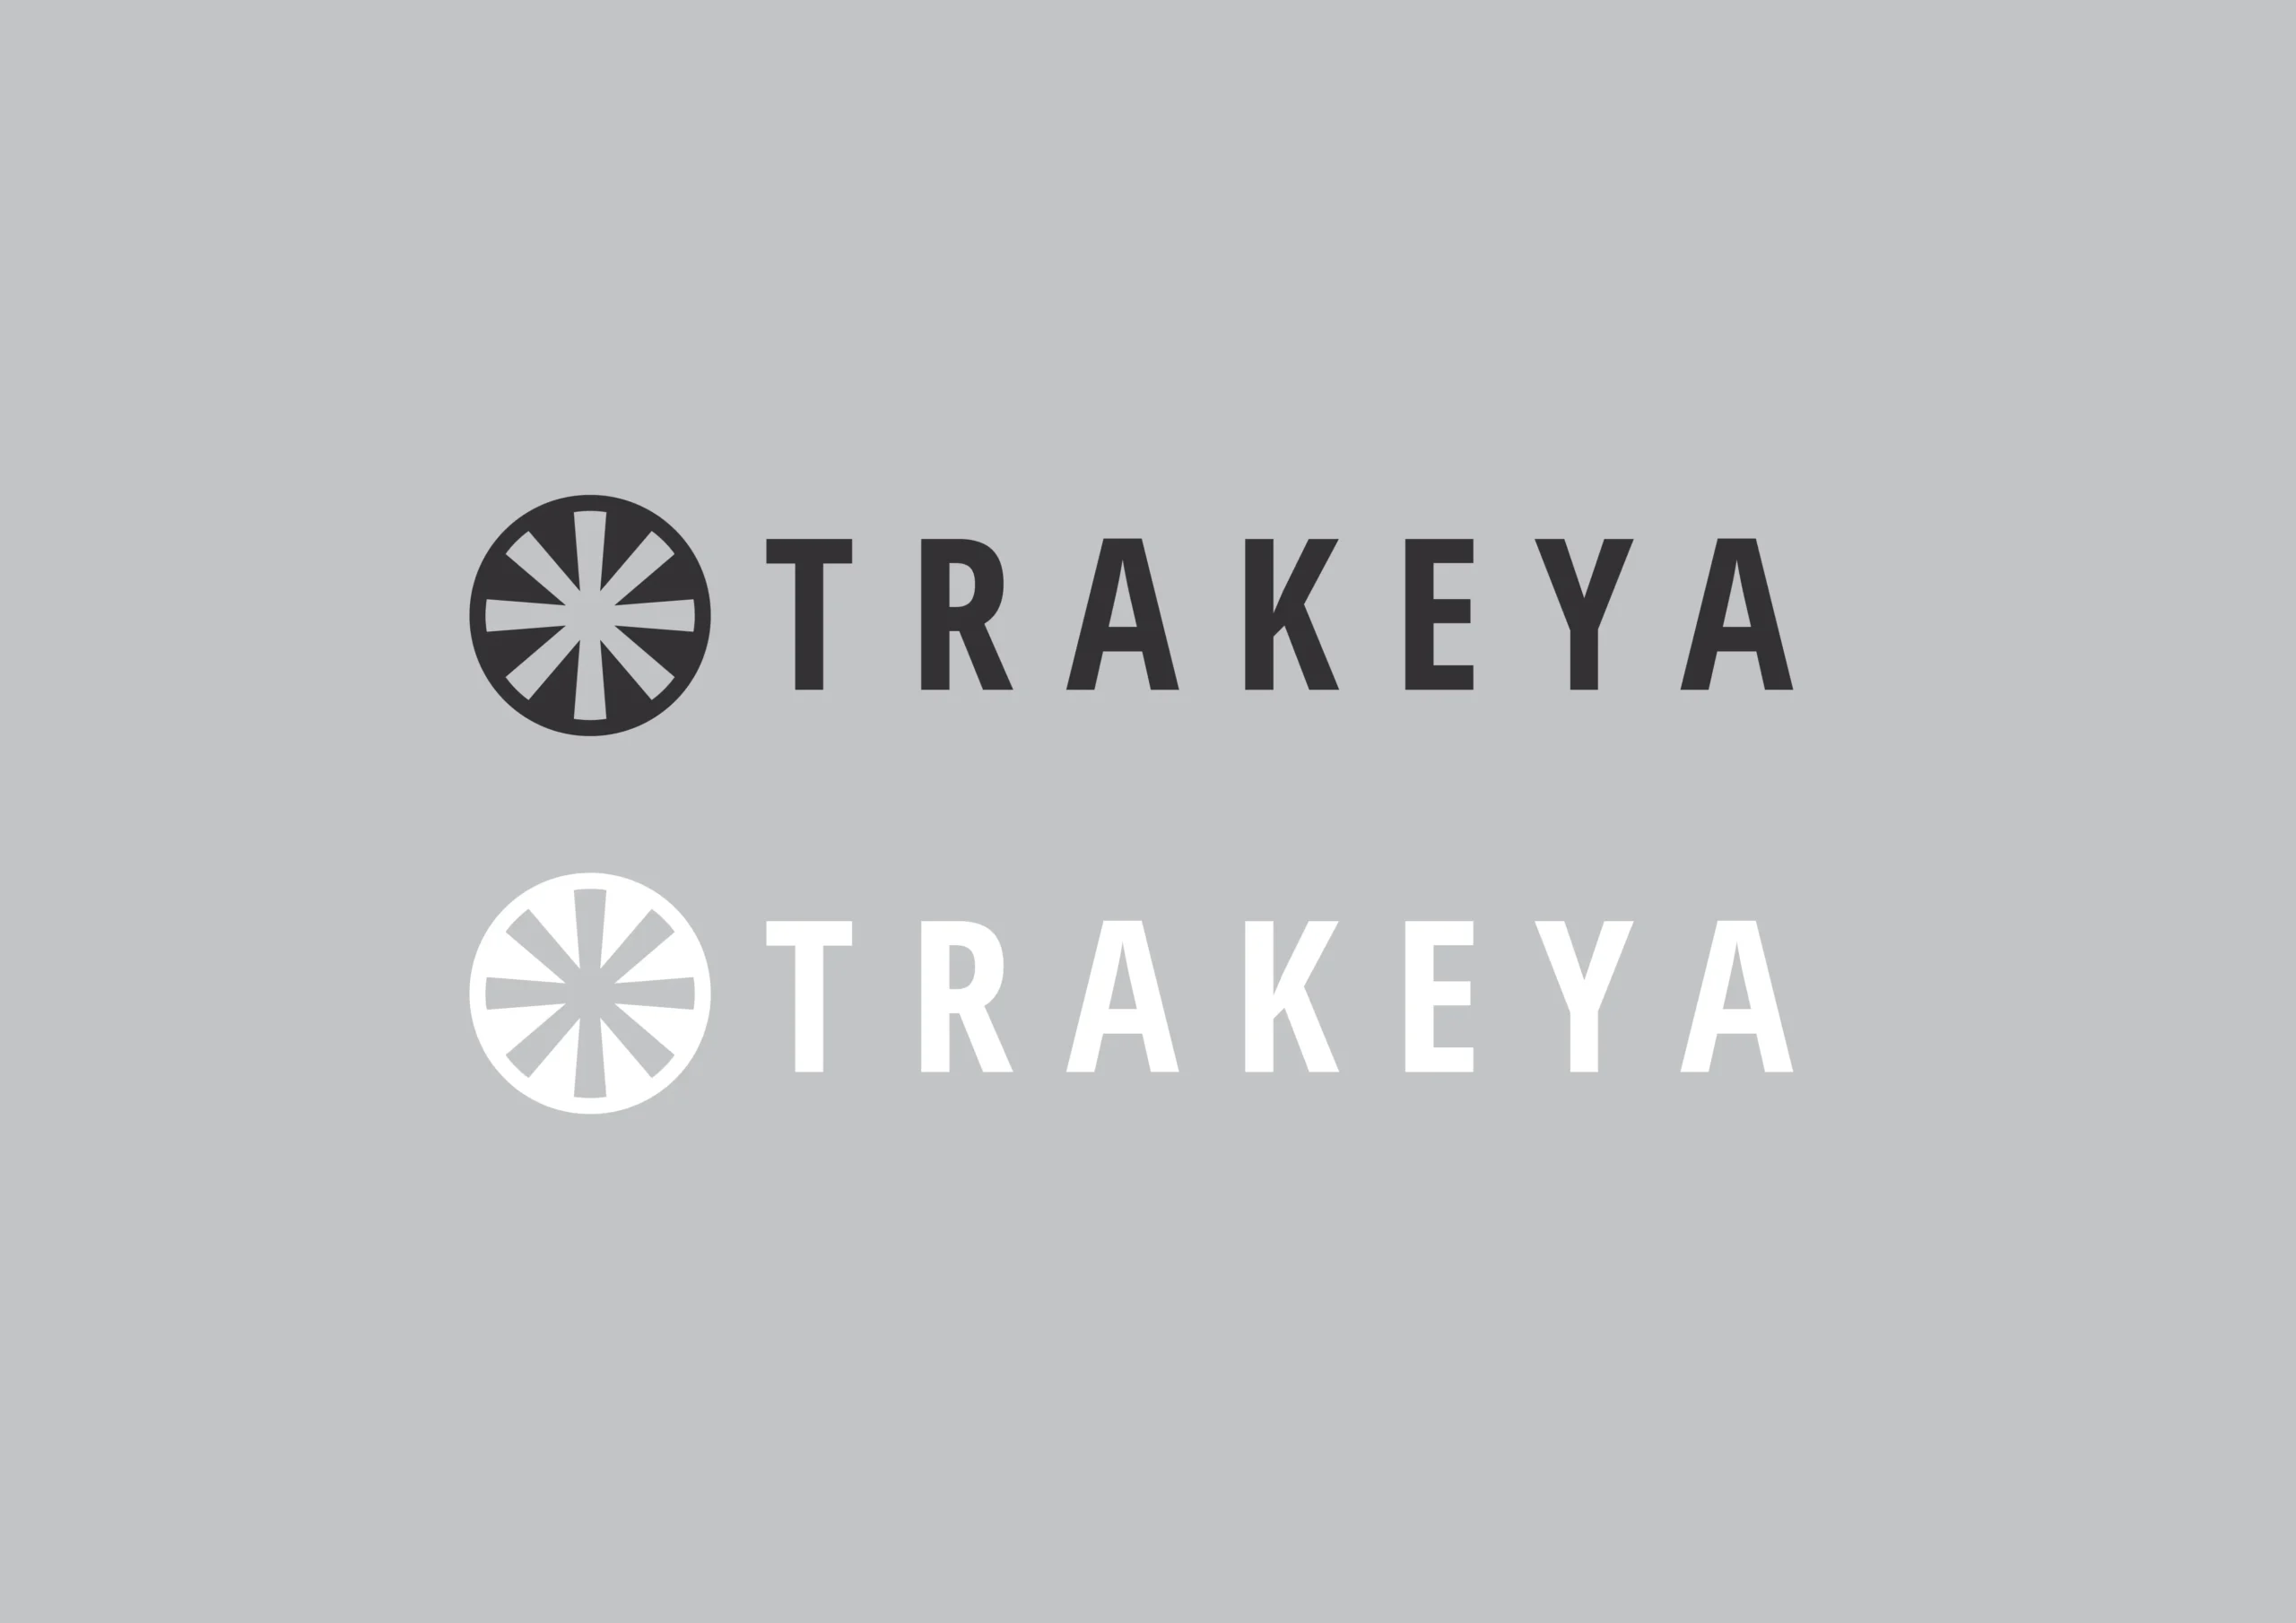 Trakeya_logo_bw-2